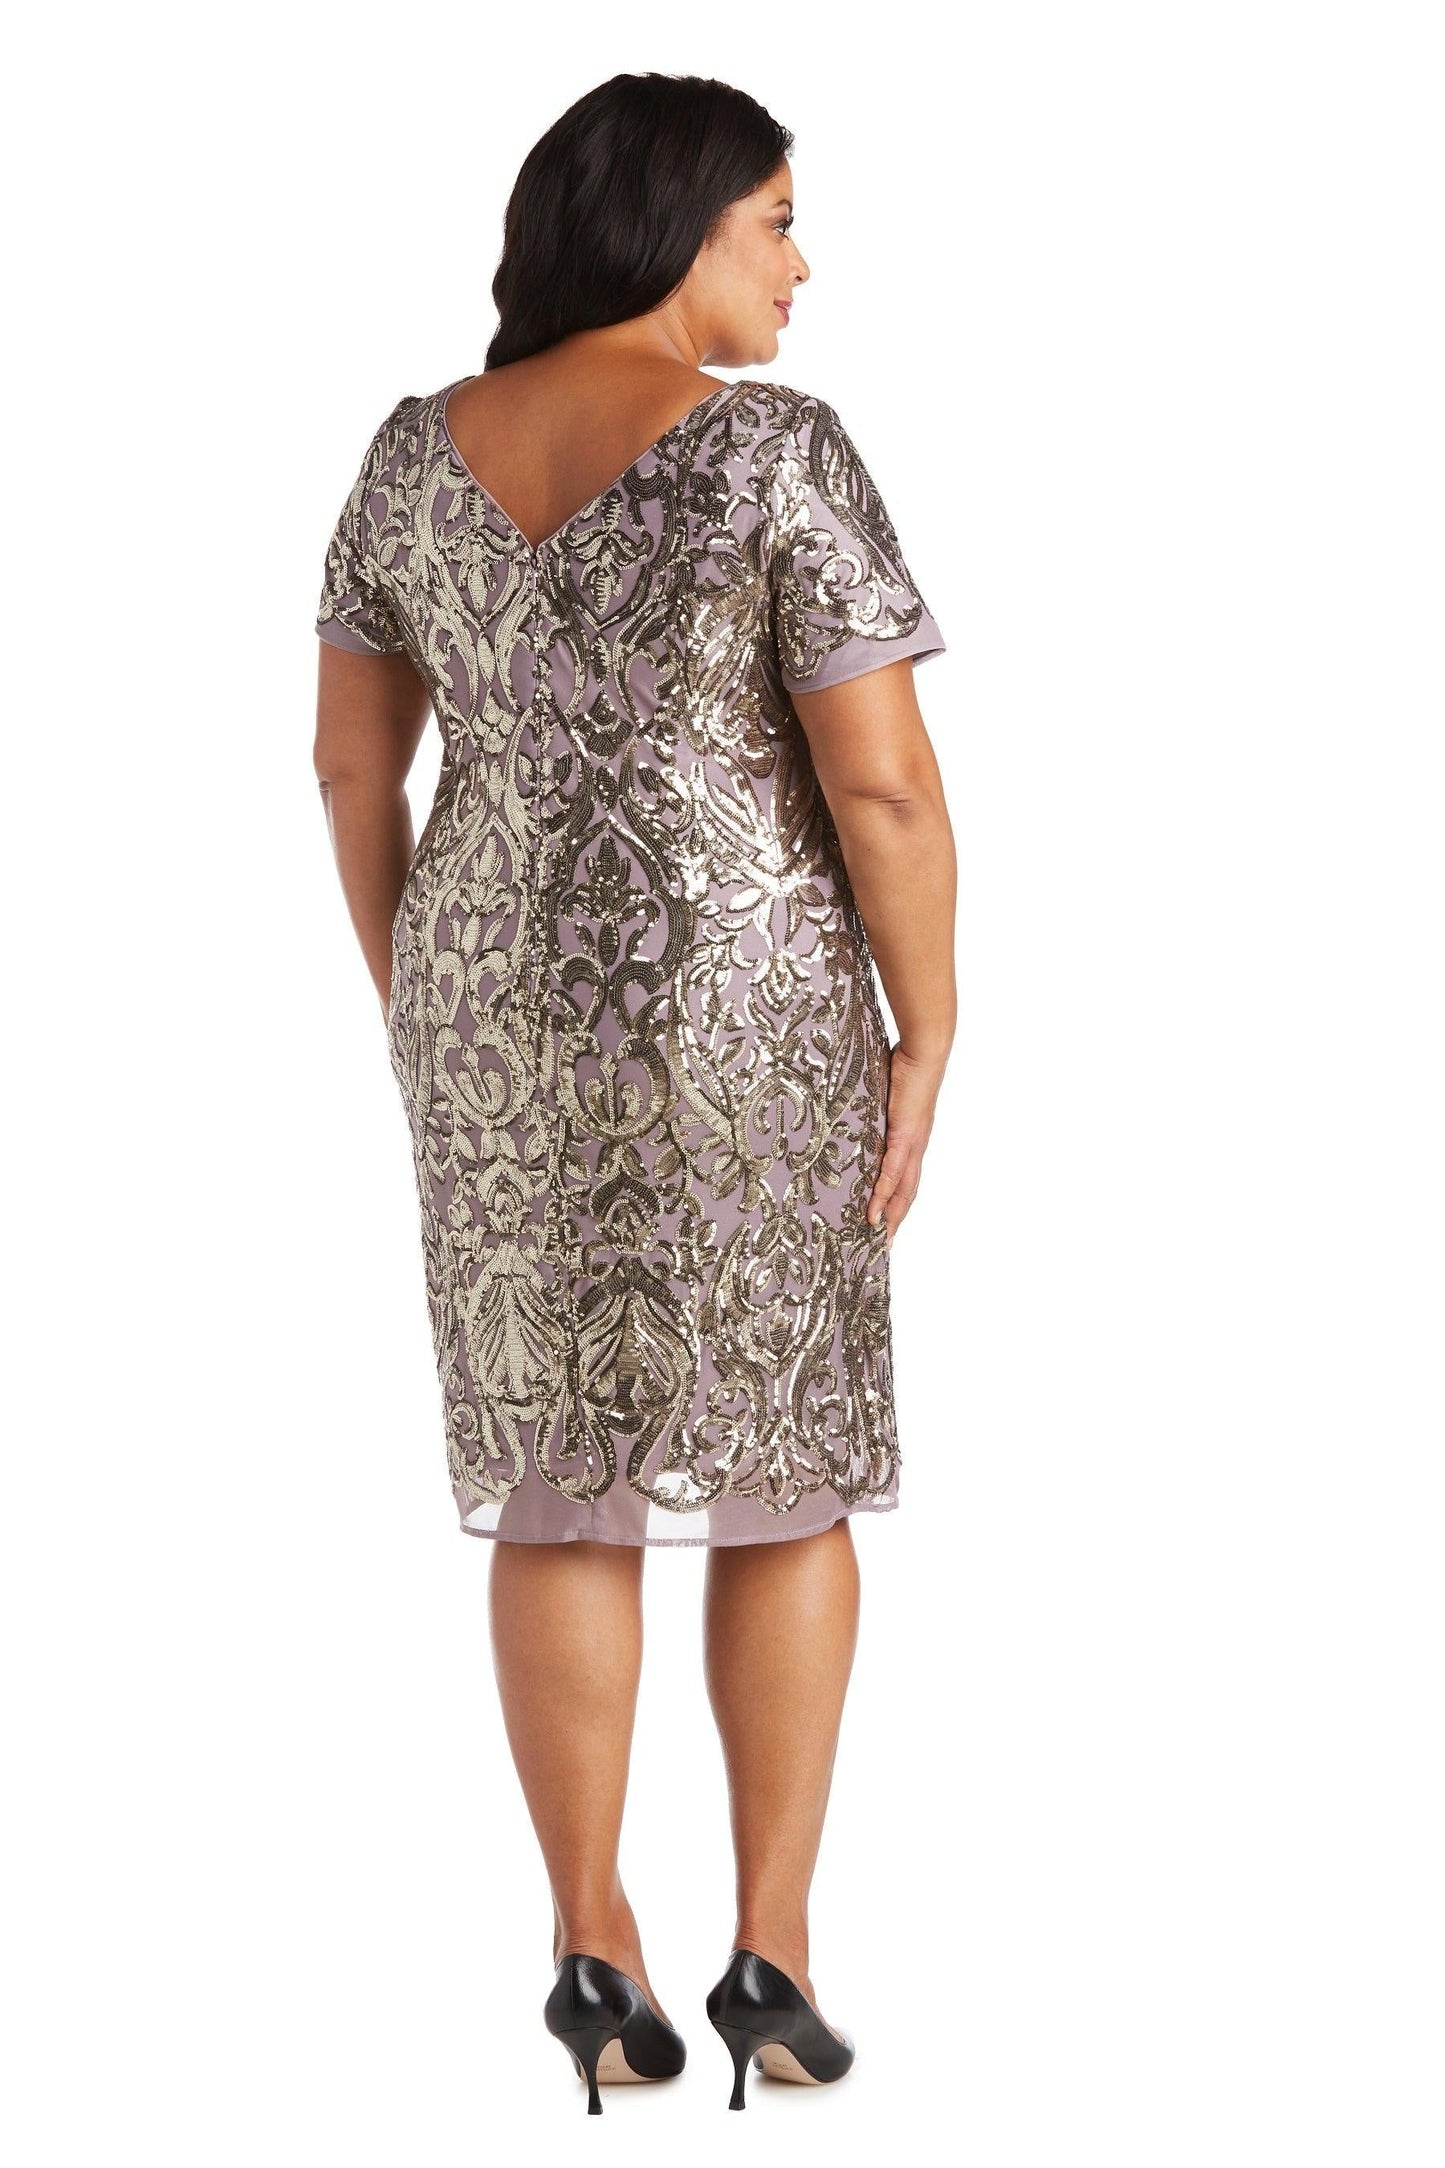 R&M Richards Plus Size Short Dress 5521W - The Dress Outlet